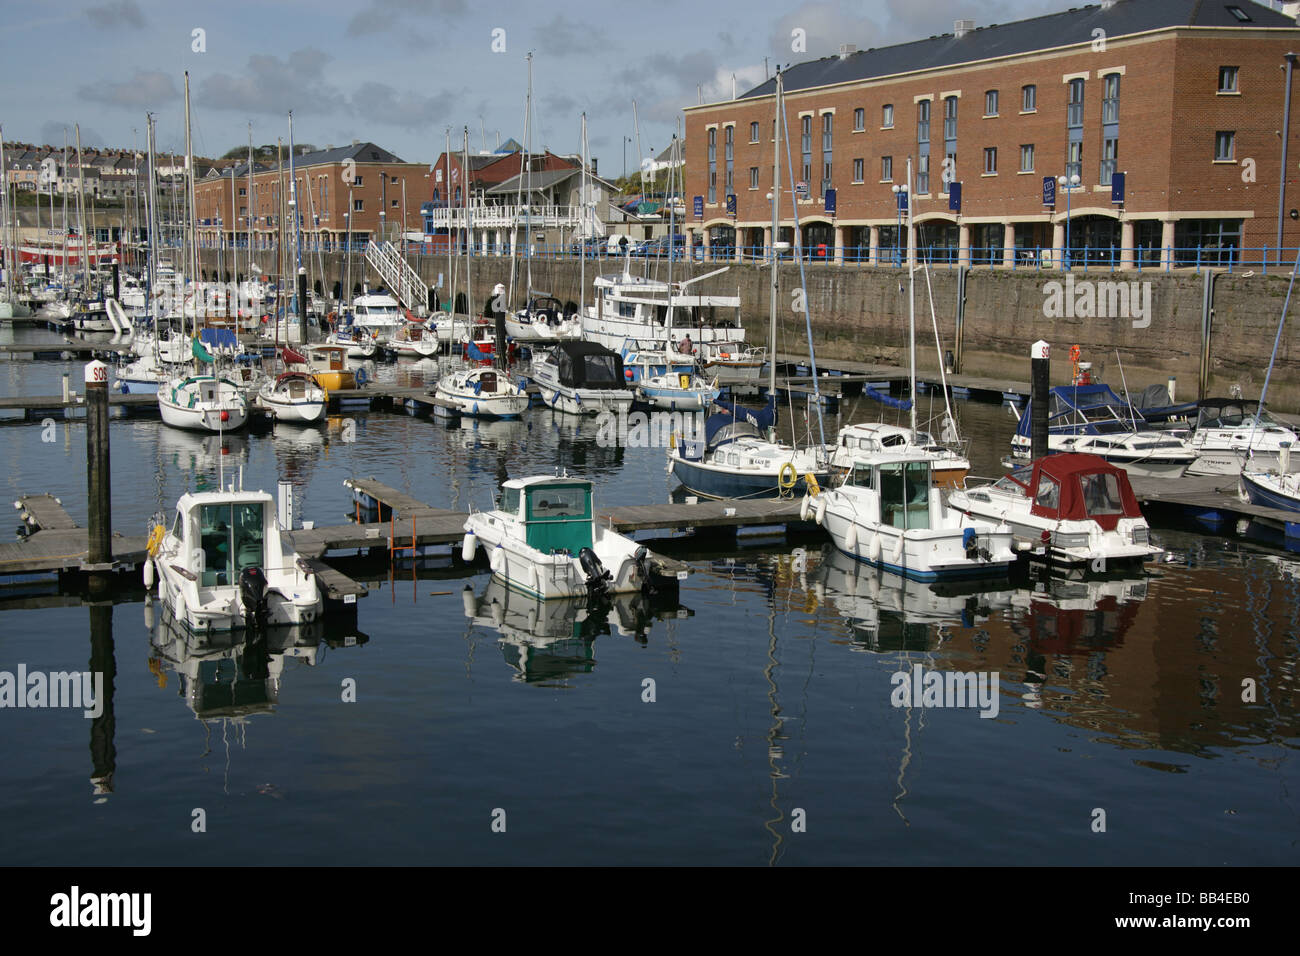 La ciudad de Milford Haven, Gales. Embarcaciones de recreo atracados en el Milford Haven Autoridad Portuaria Nelson Quay Marina. Foto de stock